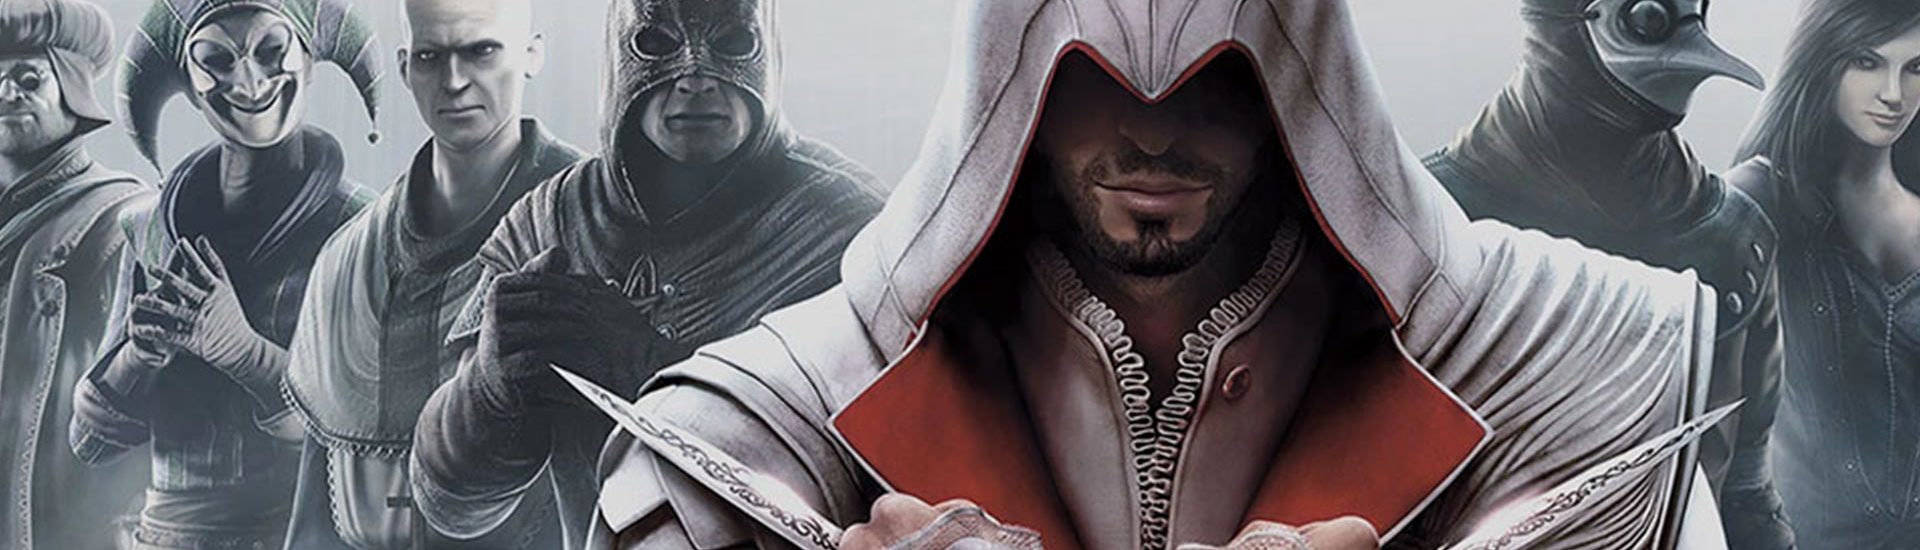 Assassin’s Creed: Ubisoft kündigt Multiplayer-Titel an